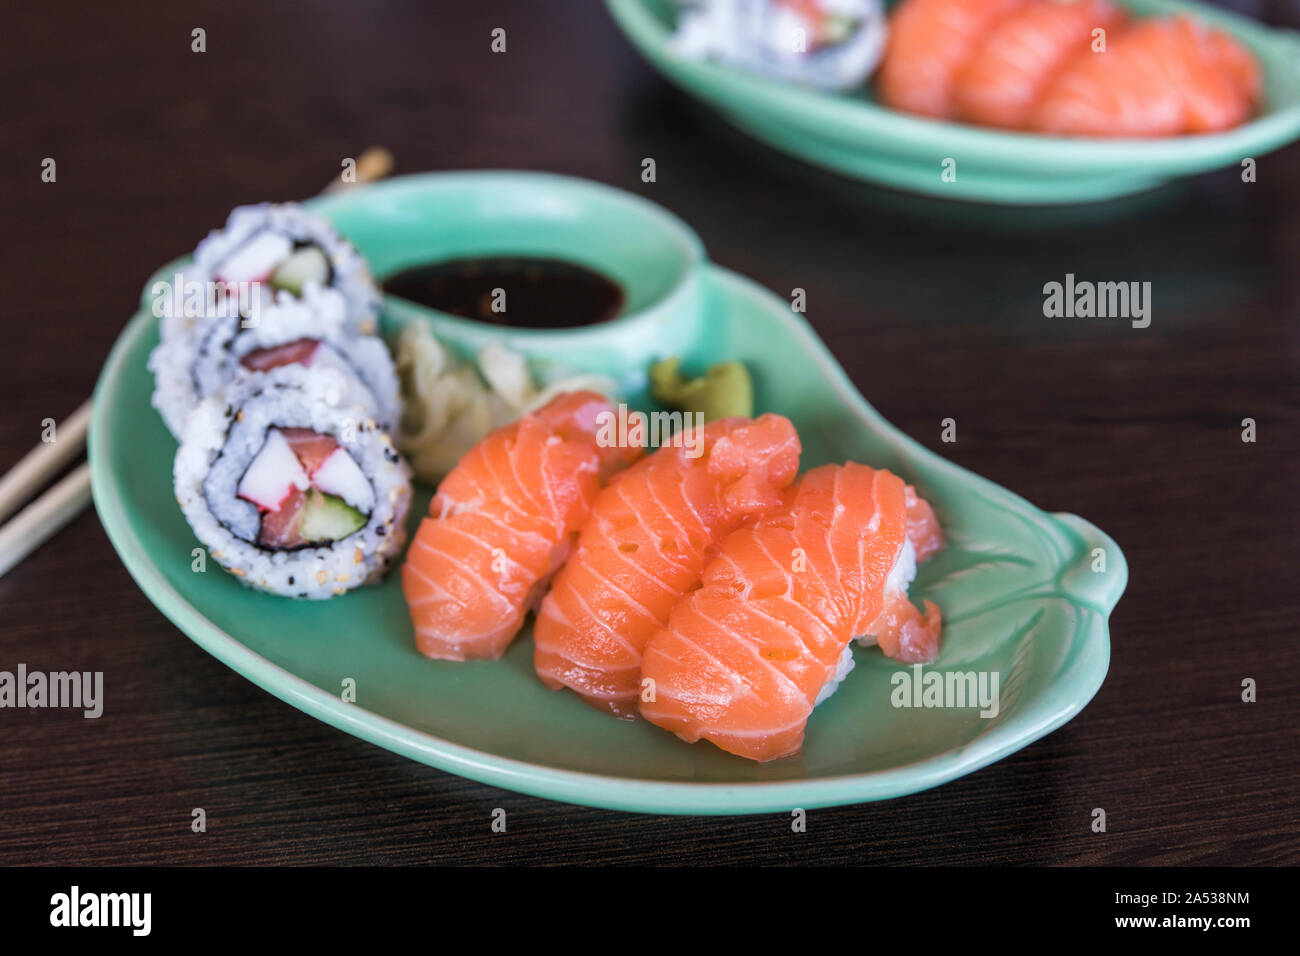 Une petite plaque sushi et Maki Nigiri avec sushi. Il y a des baguettes en bois à côté de la plaque qui se trouve sur une table en bois sombre. Banque D'Images